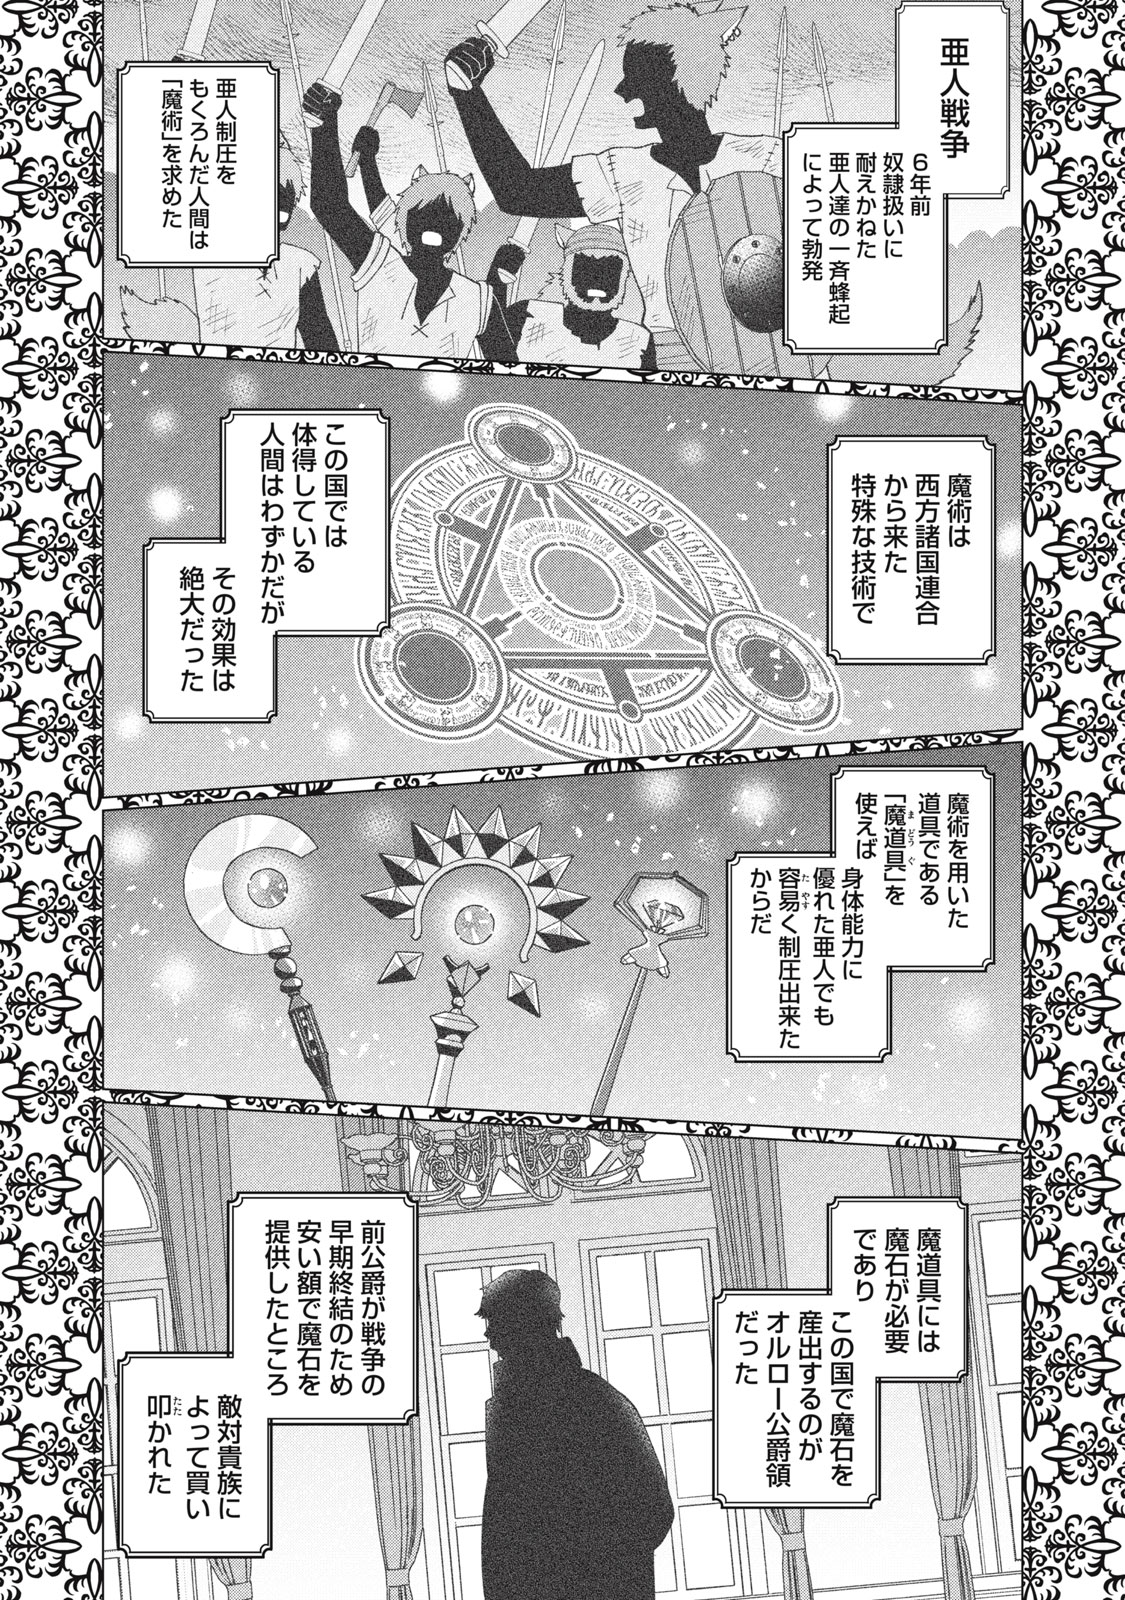 Narikin Reijou no Shiawase na Kekkon – Kane no Mouja to Nonoshirareta Reijou wa Chichioya ni Urarete Henkyou no Buta Koushaku to Shiawase ni naru - Chapter 3.1 - Page 3